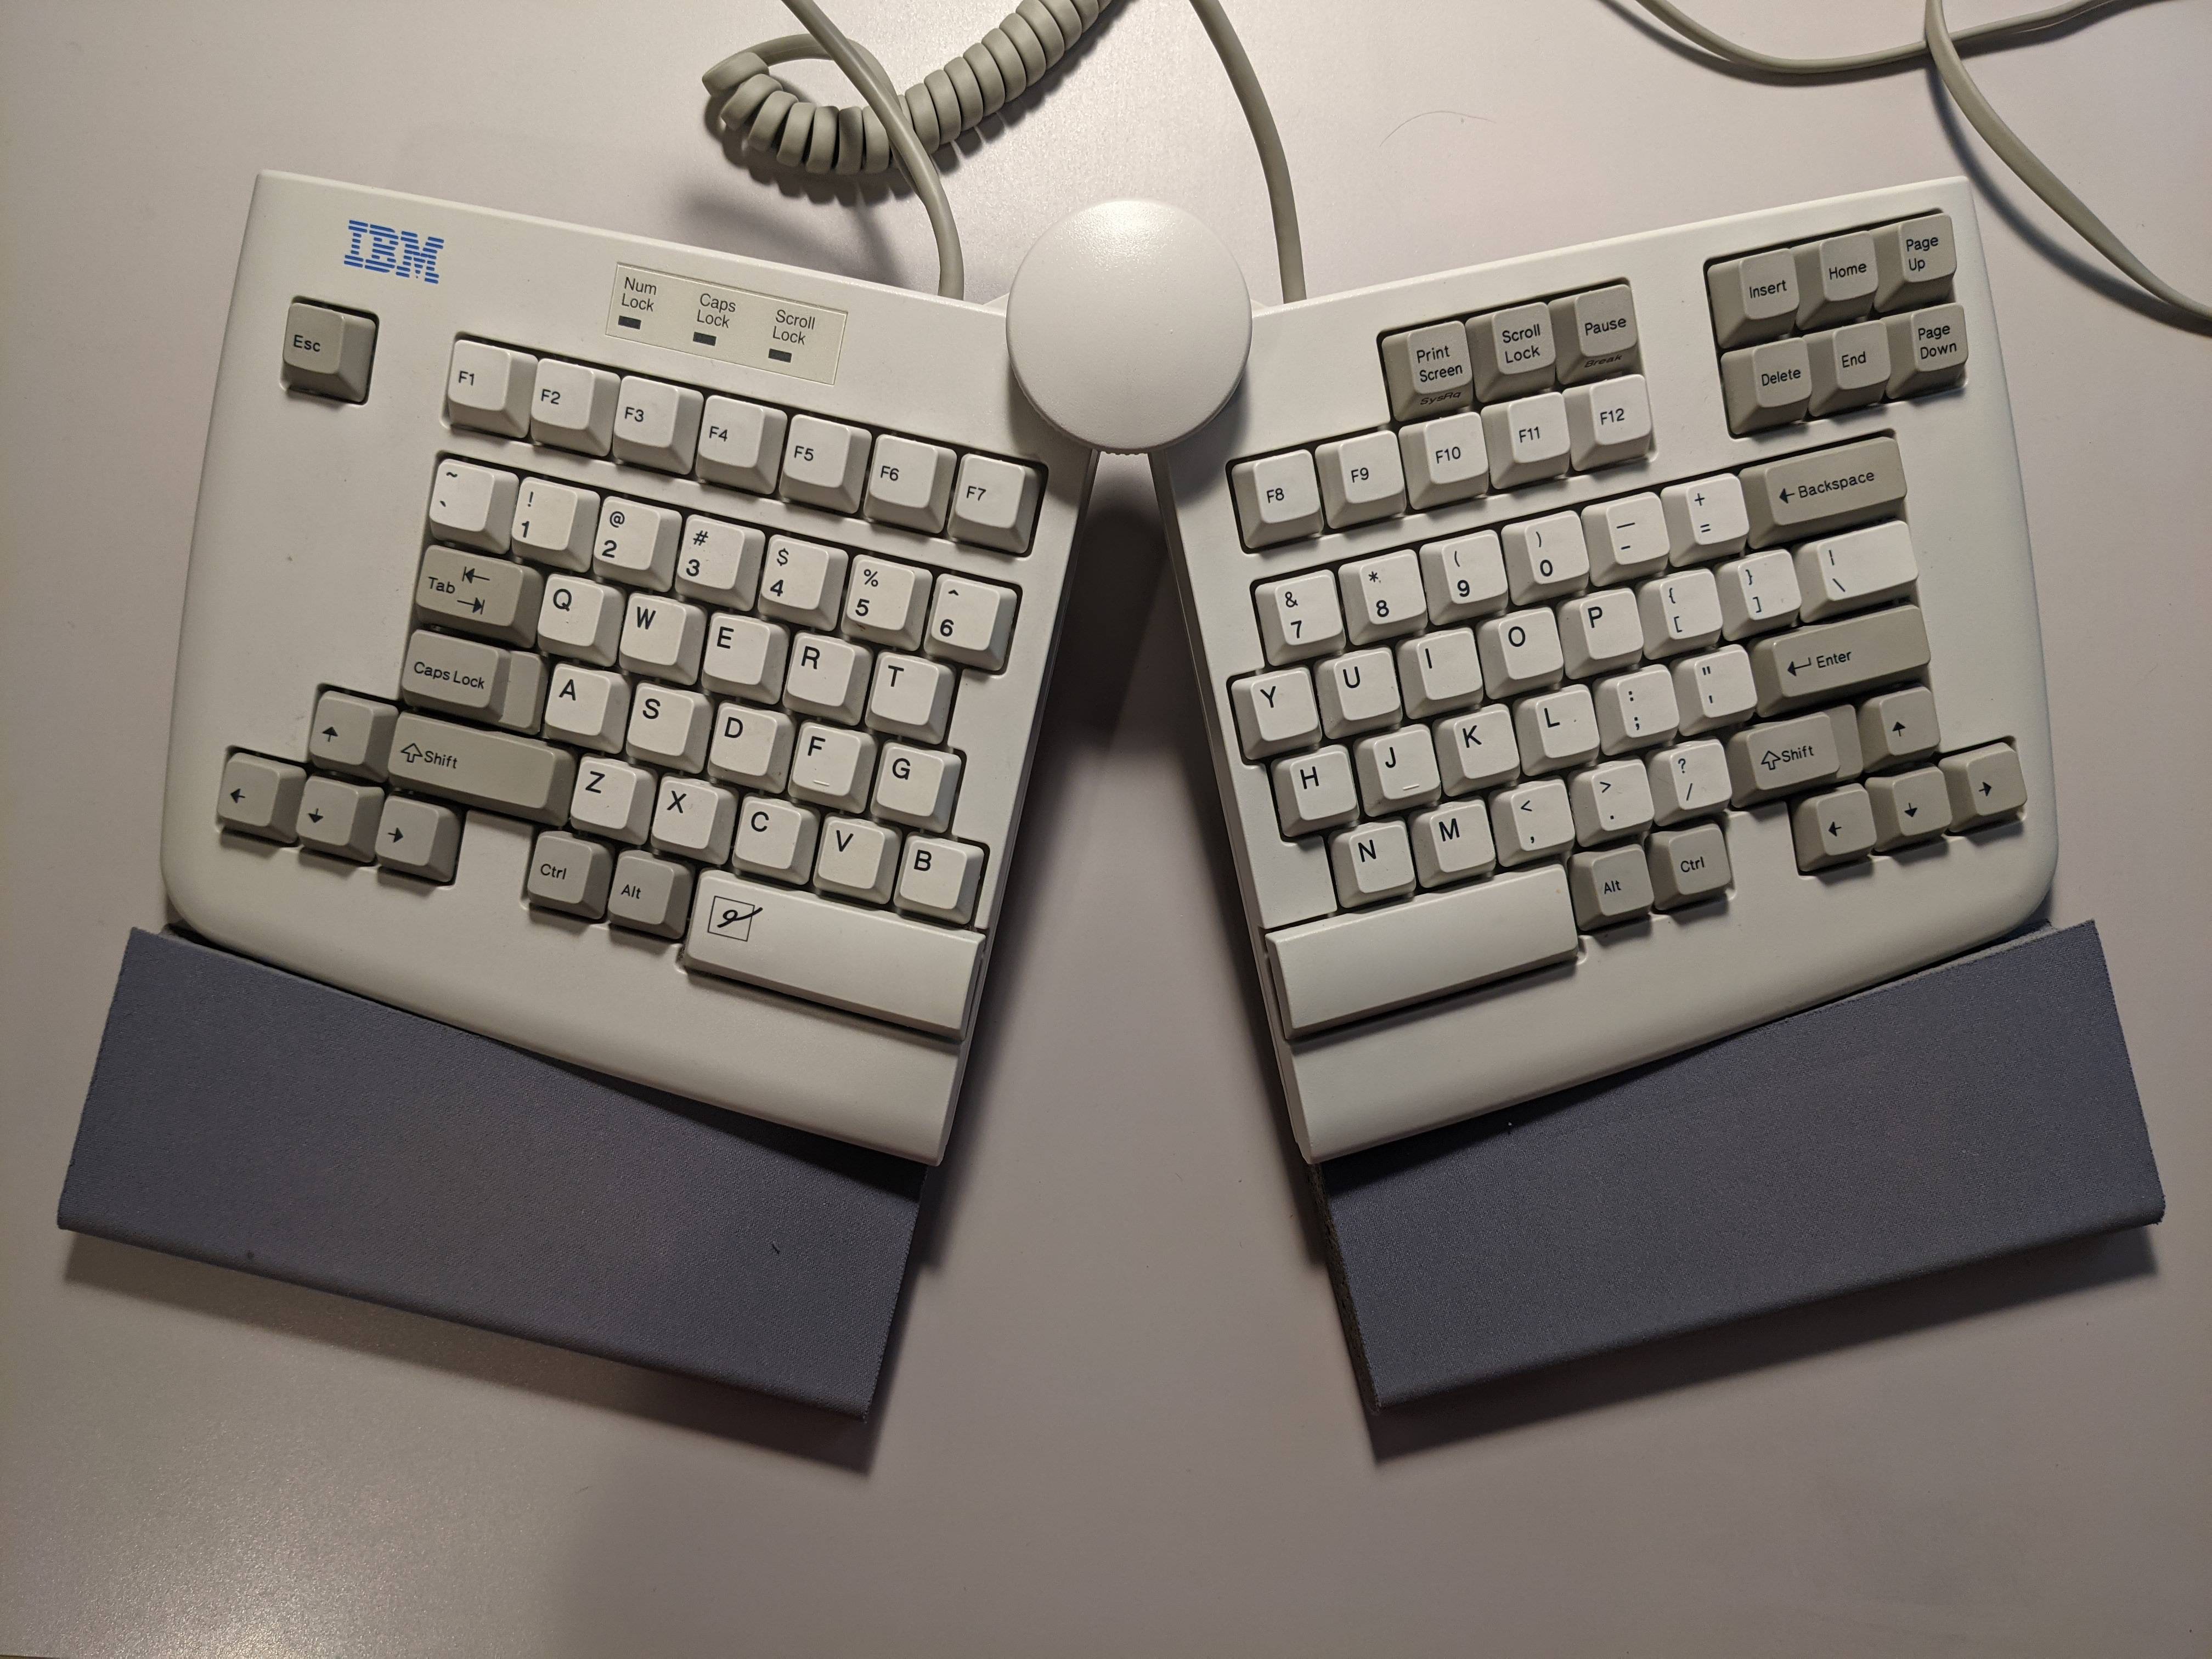 IBM model 15 keyboard 9ZTNk